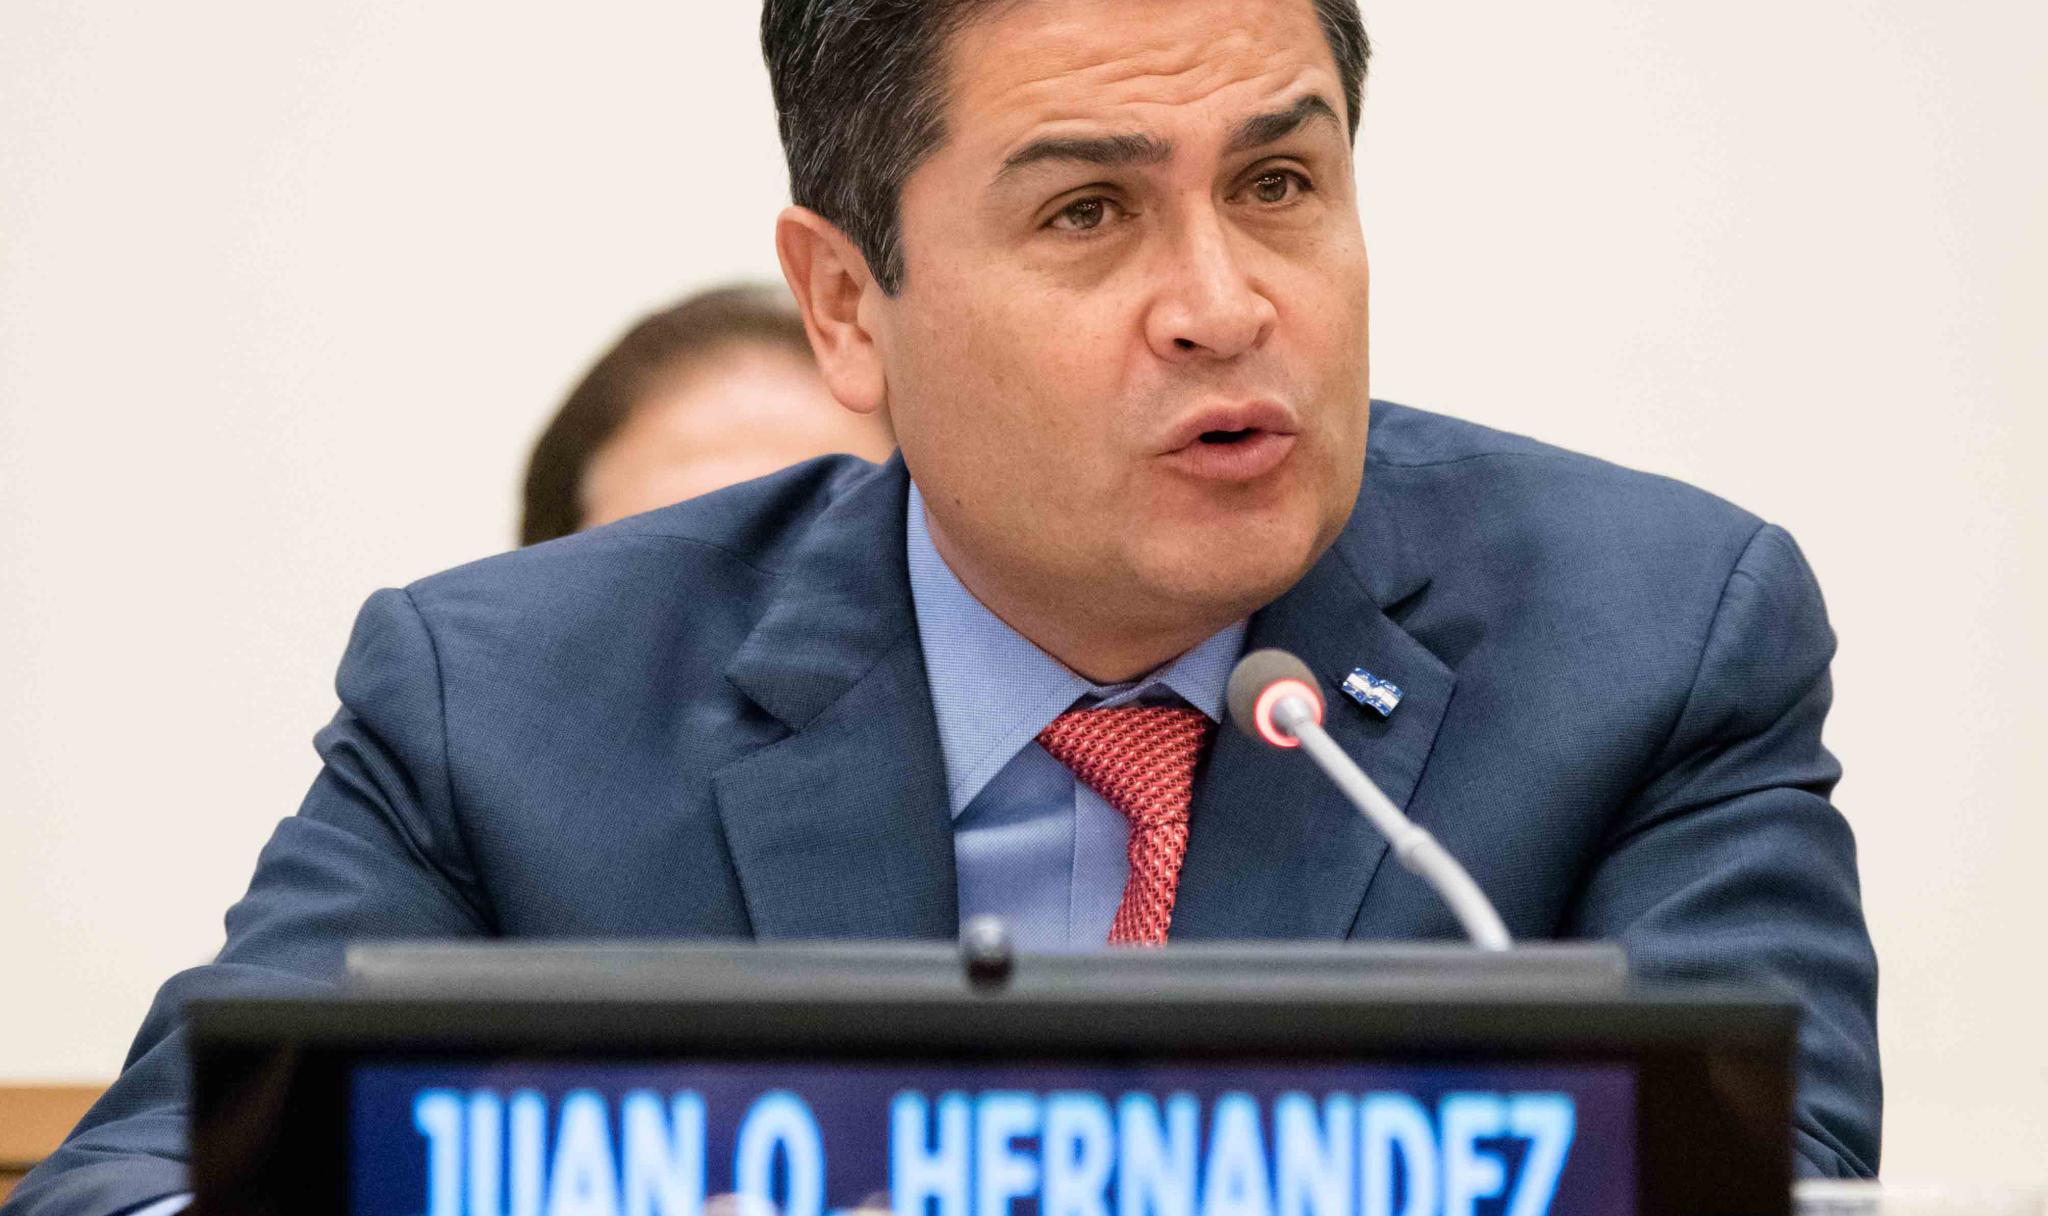 Mr Juan Orlando Hernández